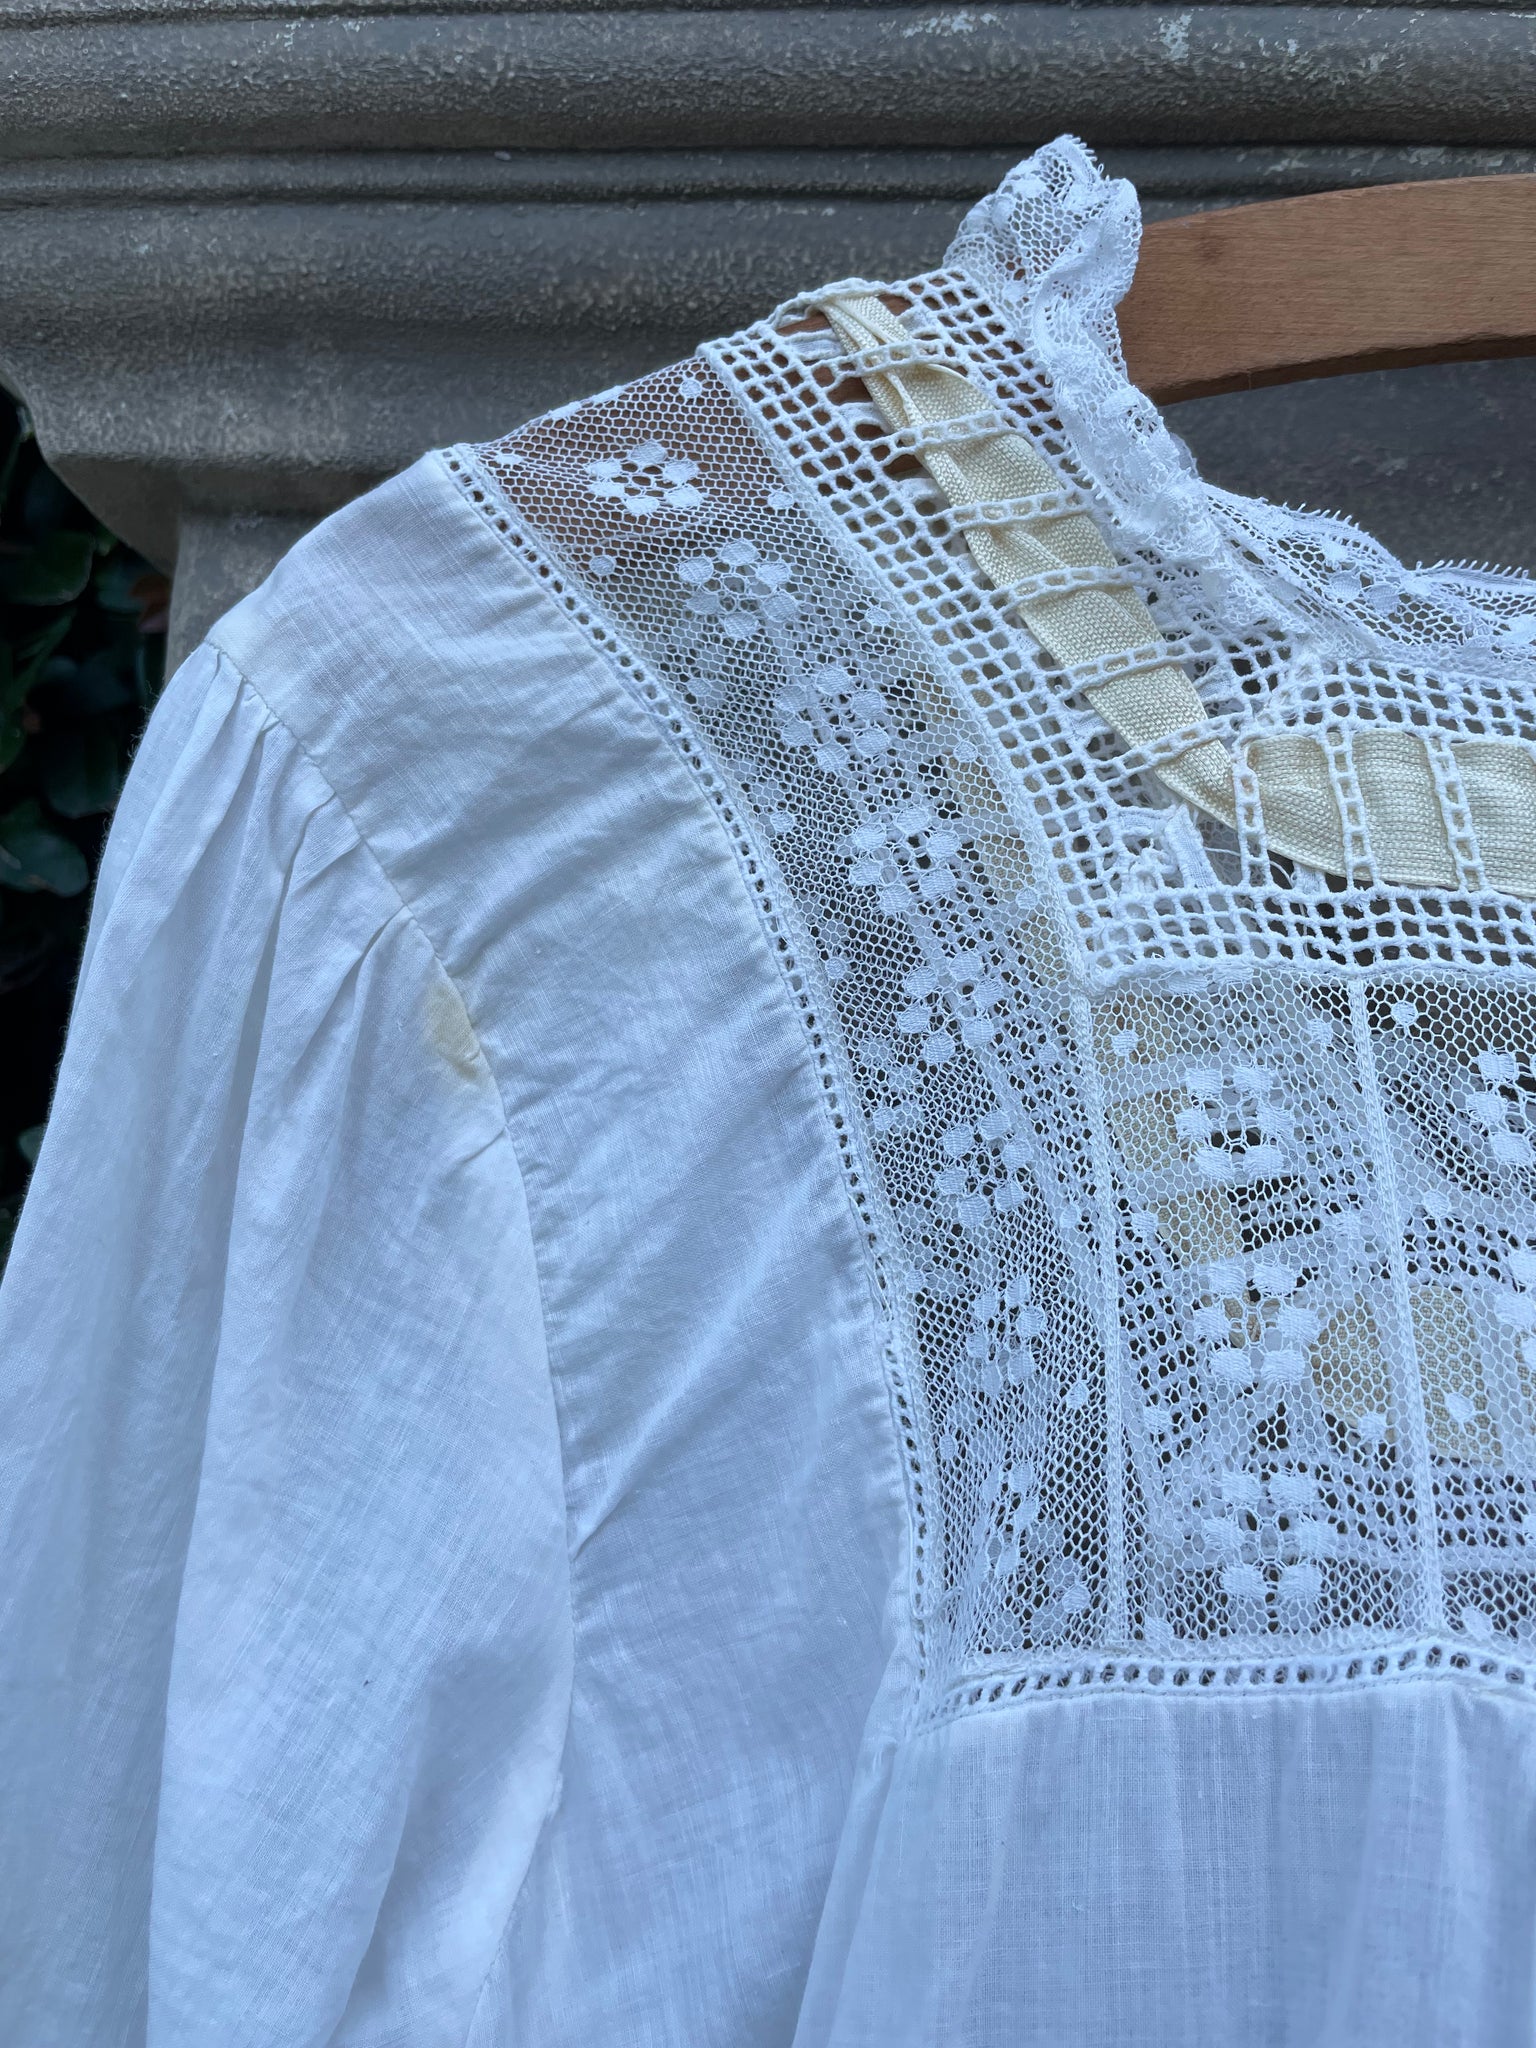 Antique Edwardian Cotton & Lace Boudoir Gown